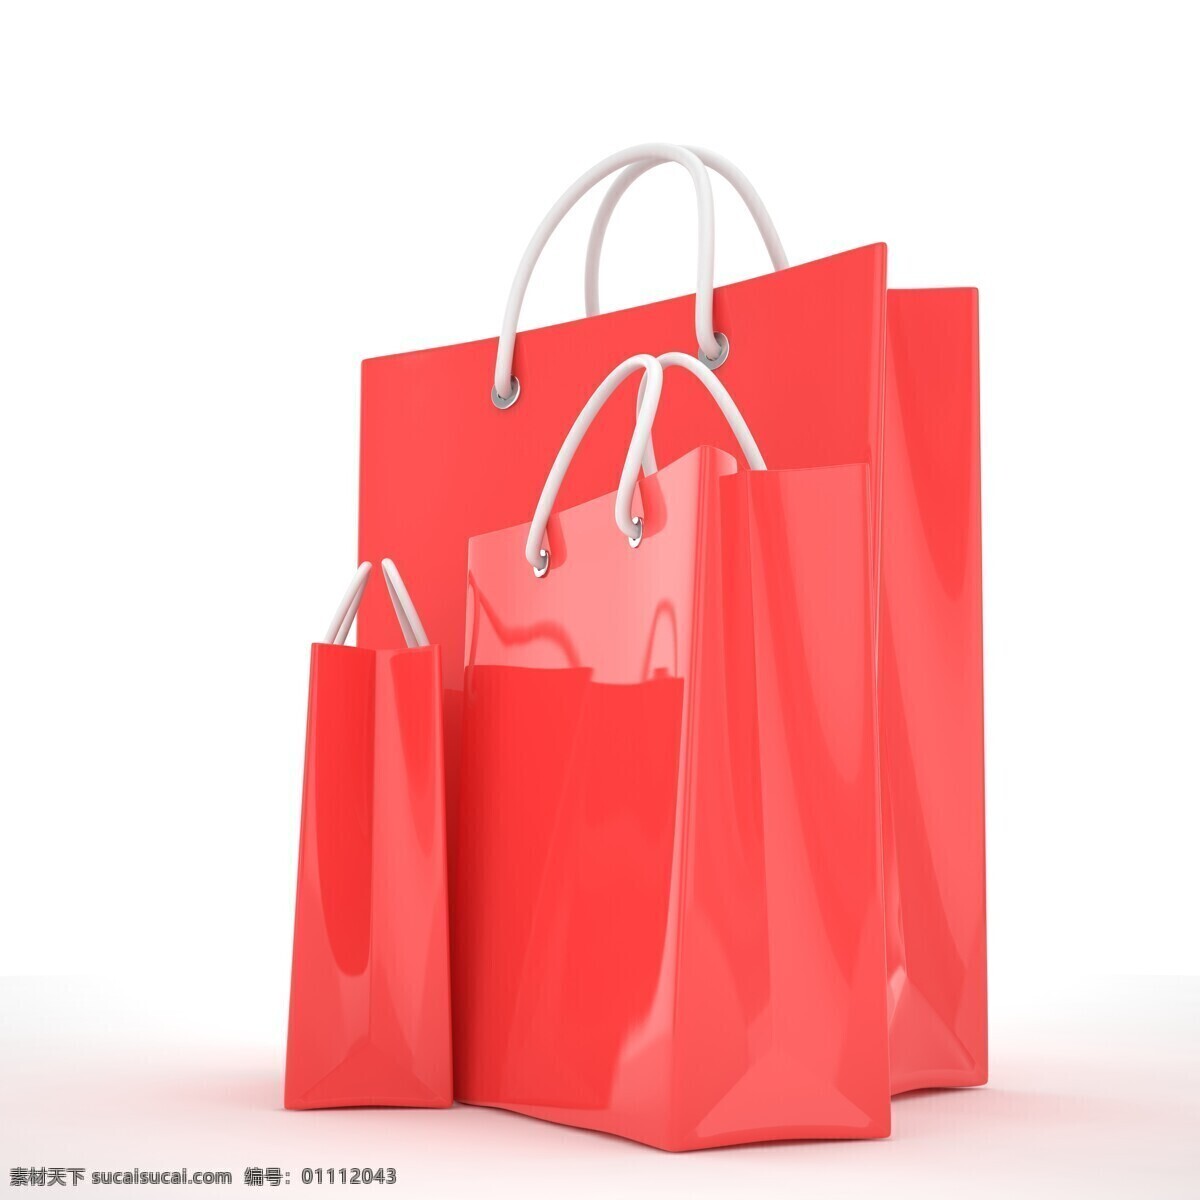 红色手提袋 购物袋 纸袋 礼品袋 袋子 折叠袋 购物 包装袋 手提袋 手提 手提袋样机 样机